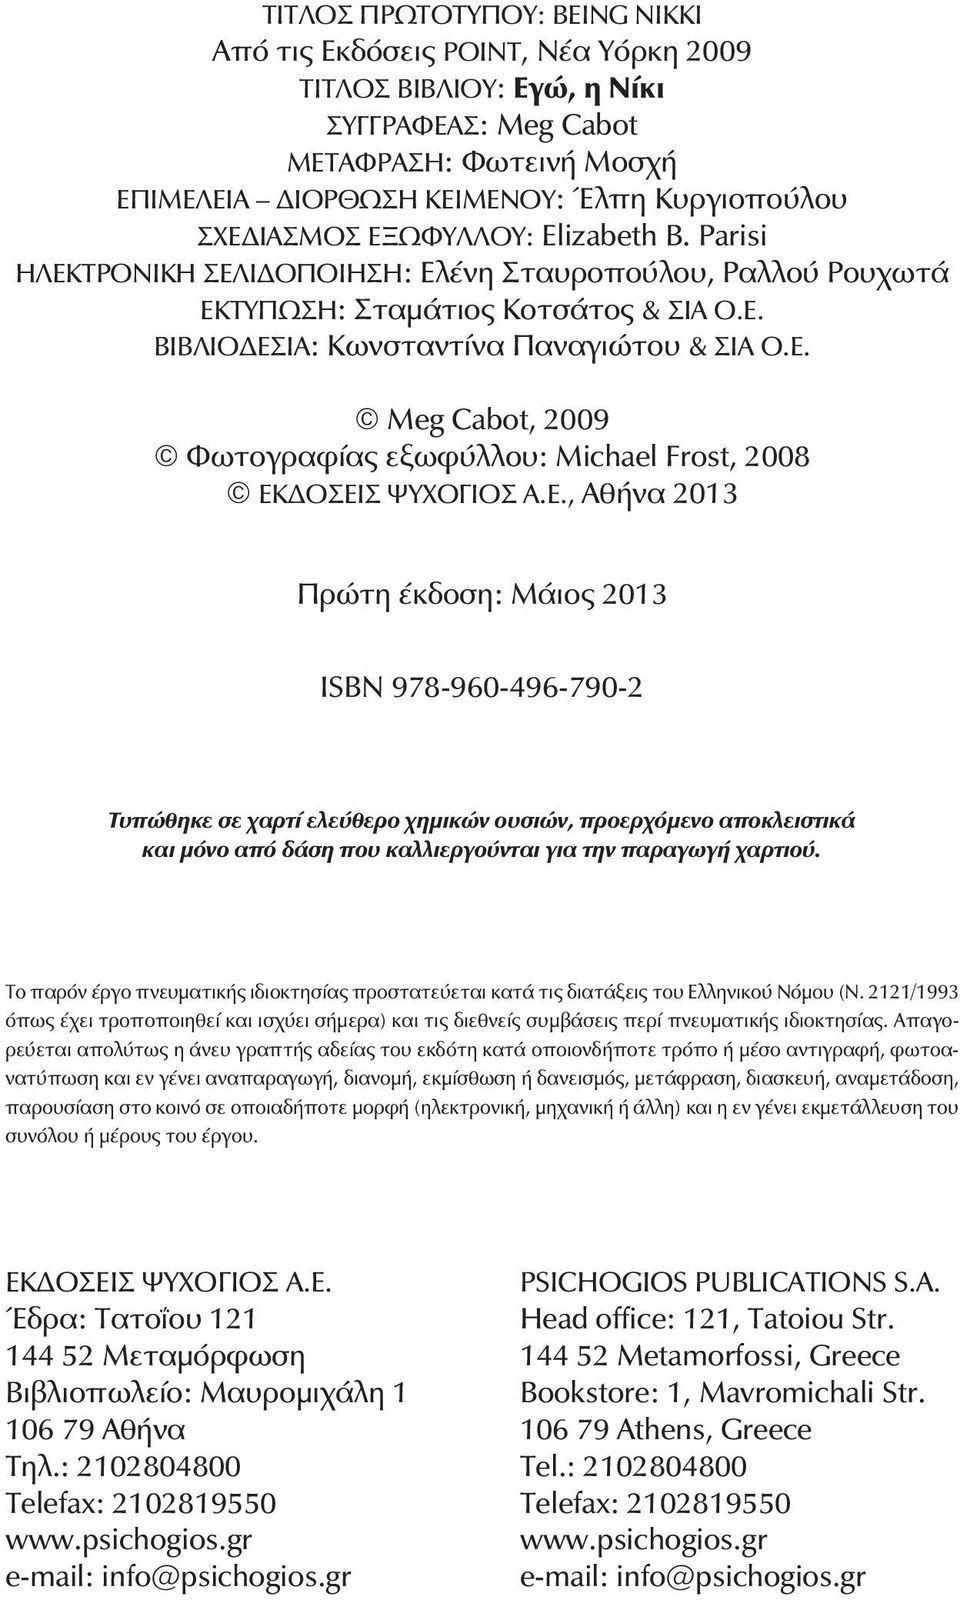 Ε., Αθήνα 2013 Ðñþôç Ýêäïóç: Μάιος 2013 ÉSBN 978-960-496-790-2 Τυπώθηκε σε χαρτί ελεύθερο χημικών ουσιών, προερχόμενο αποκλειστικά και μόνο από δάση που καλλιεργούνται για την παραγωγή χαρτιού.